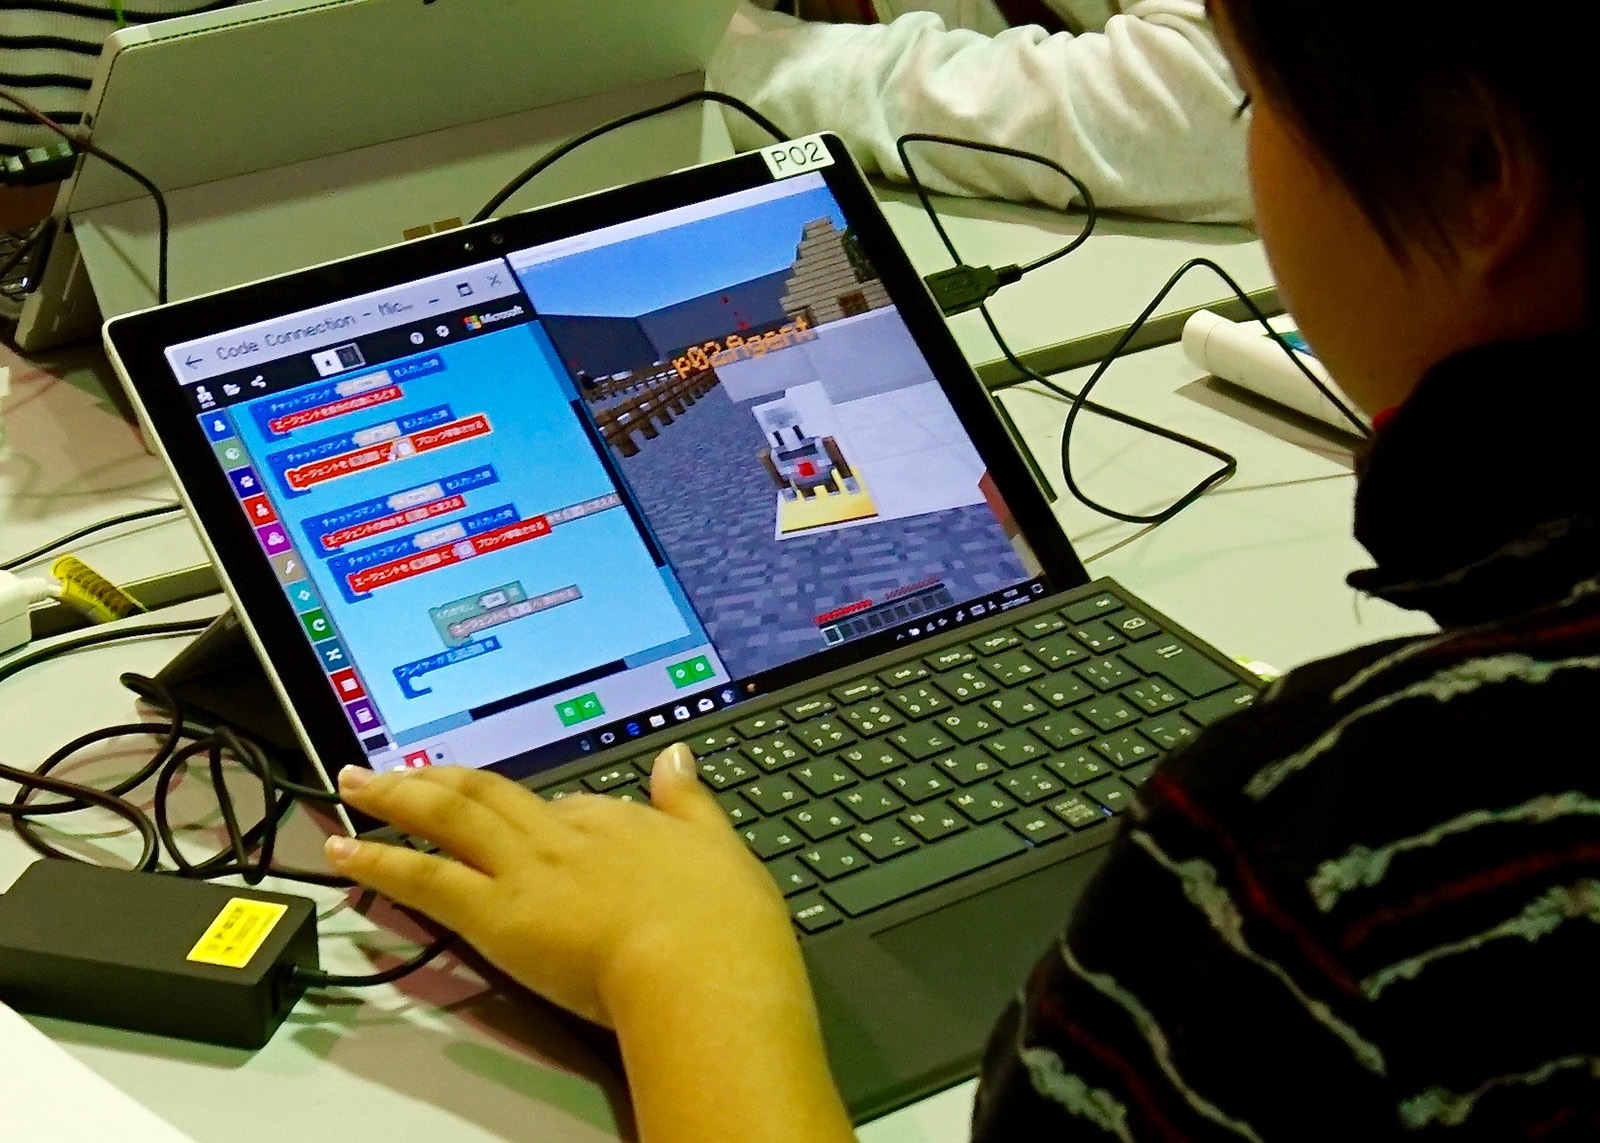 スクリーンの画面右が 「Minecraft:Education Edition」、画面左がプログラミングを行う「MakeCode」の画面